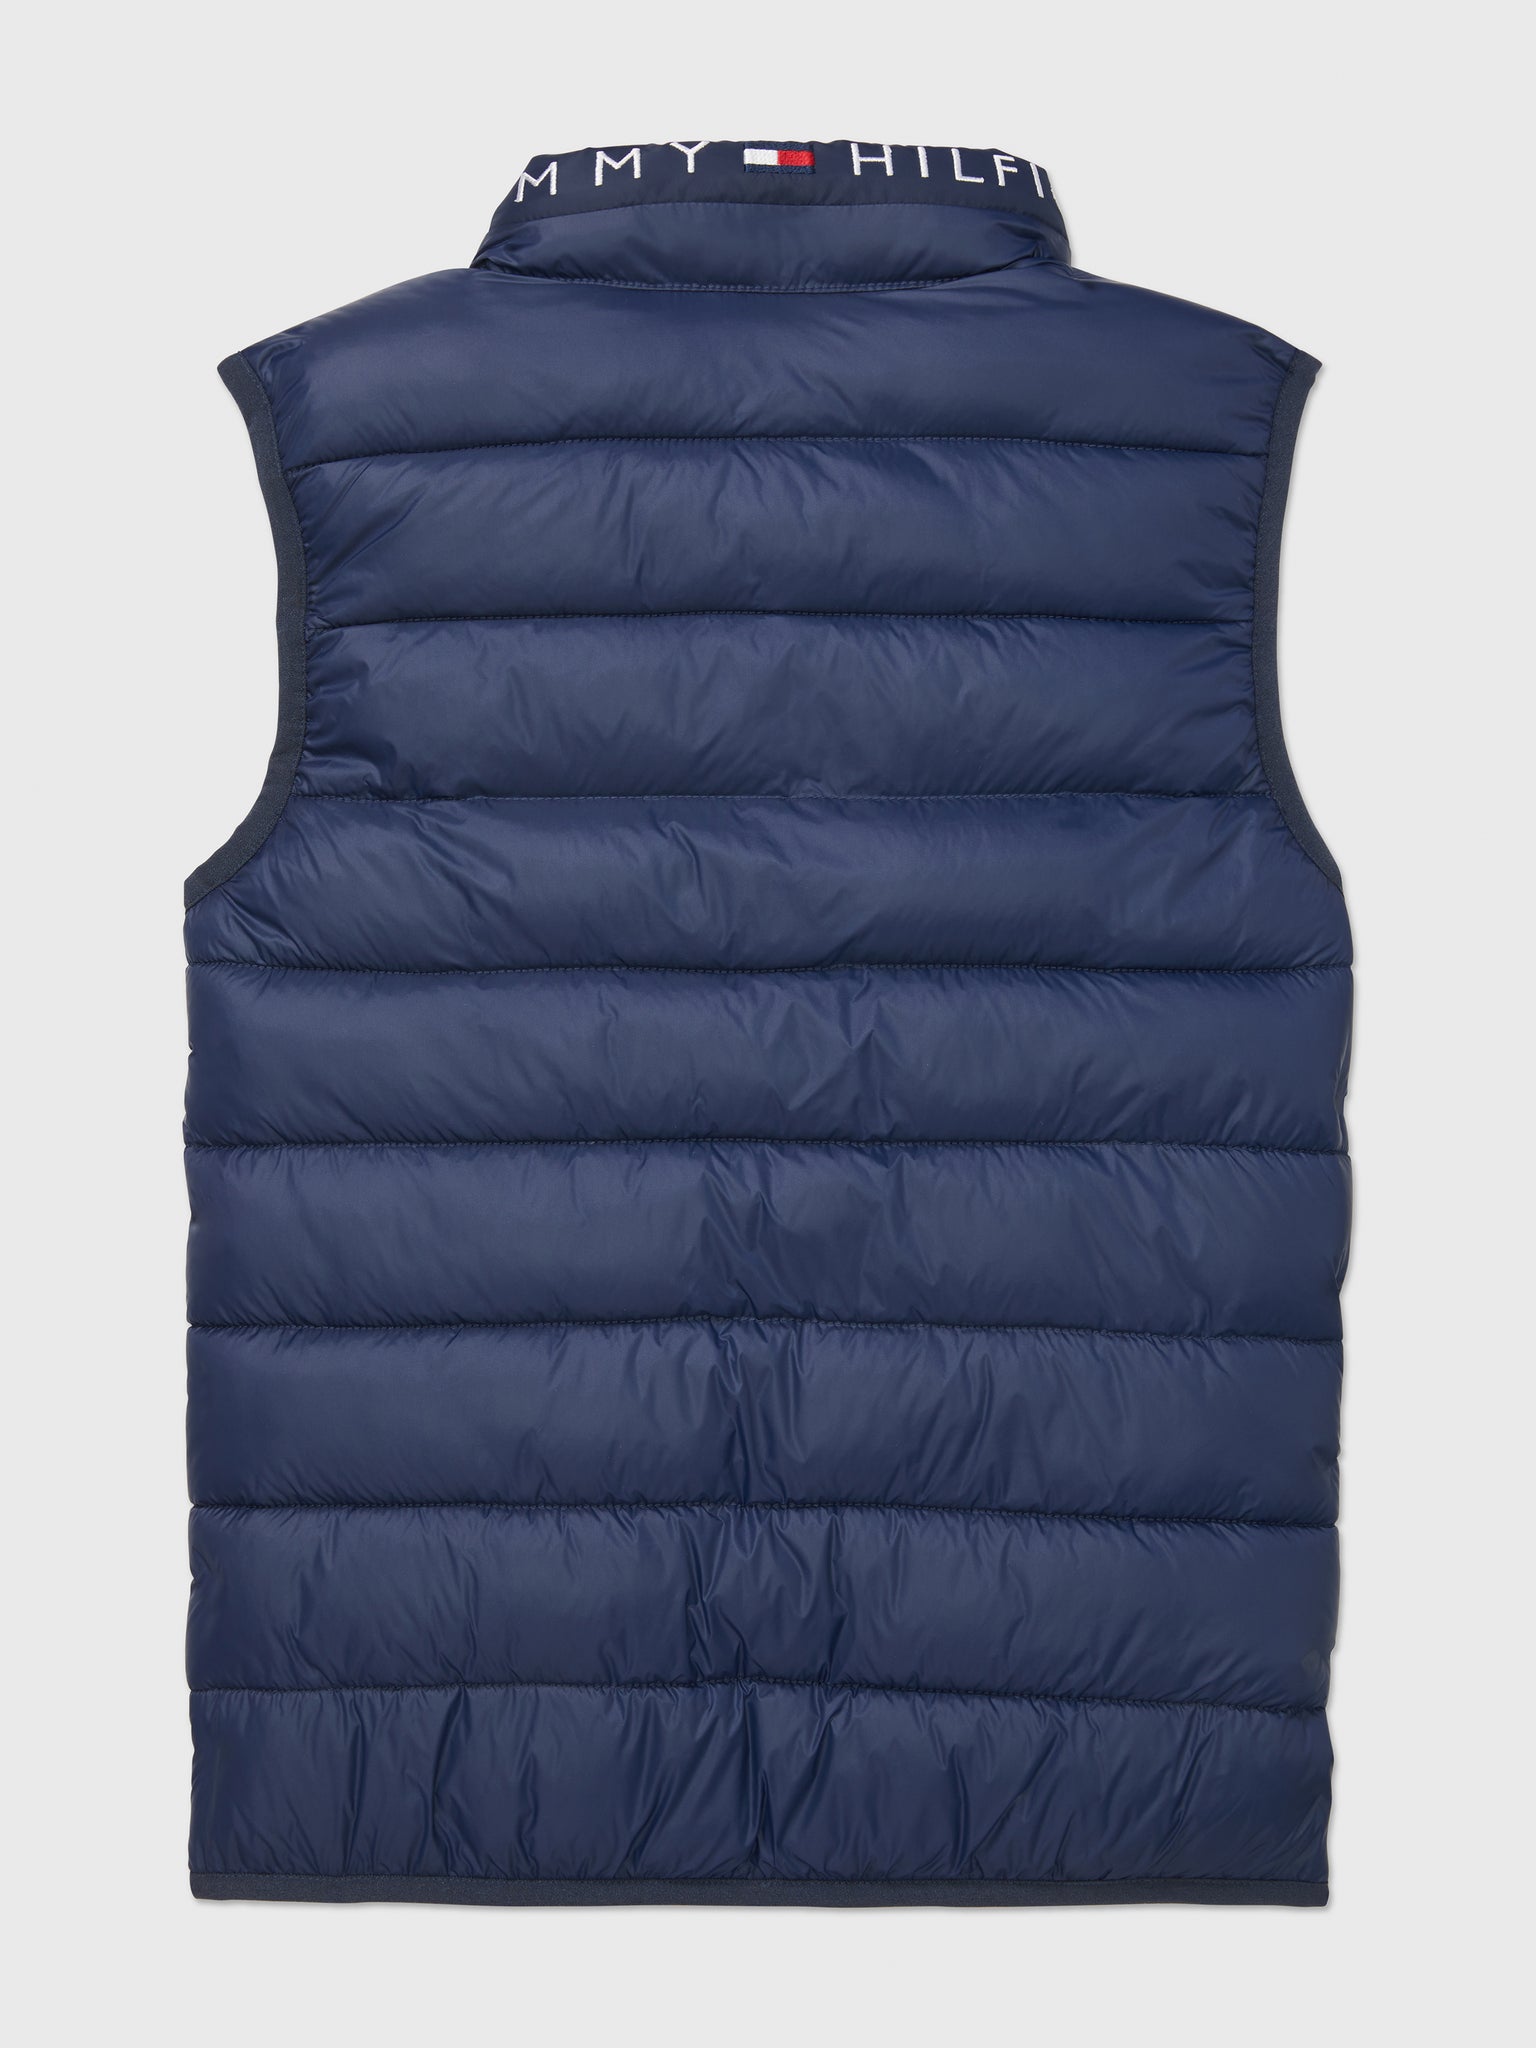 Lightweight Puffer Vest (Kids) - Cobalt Saphire